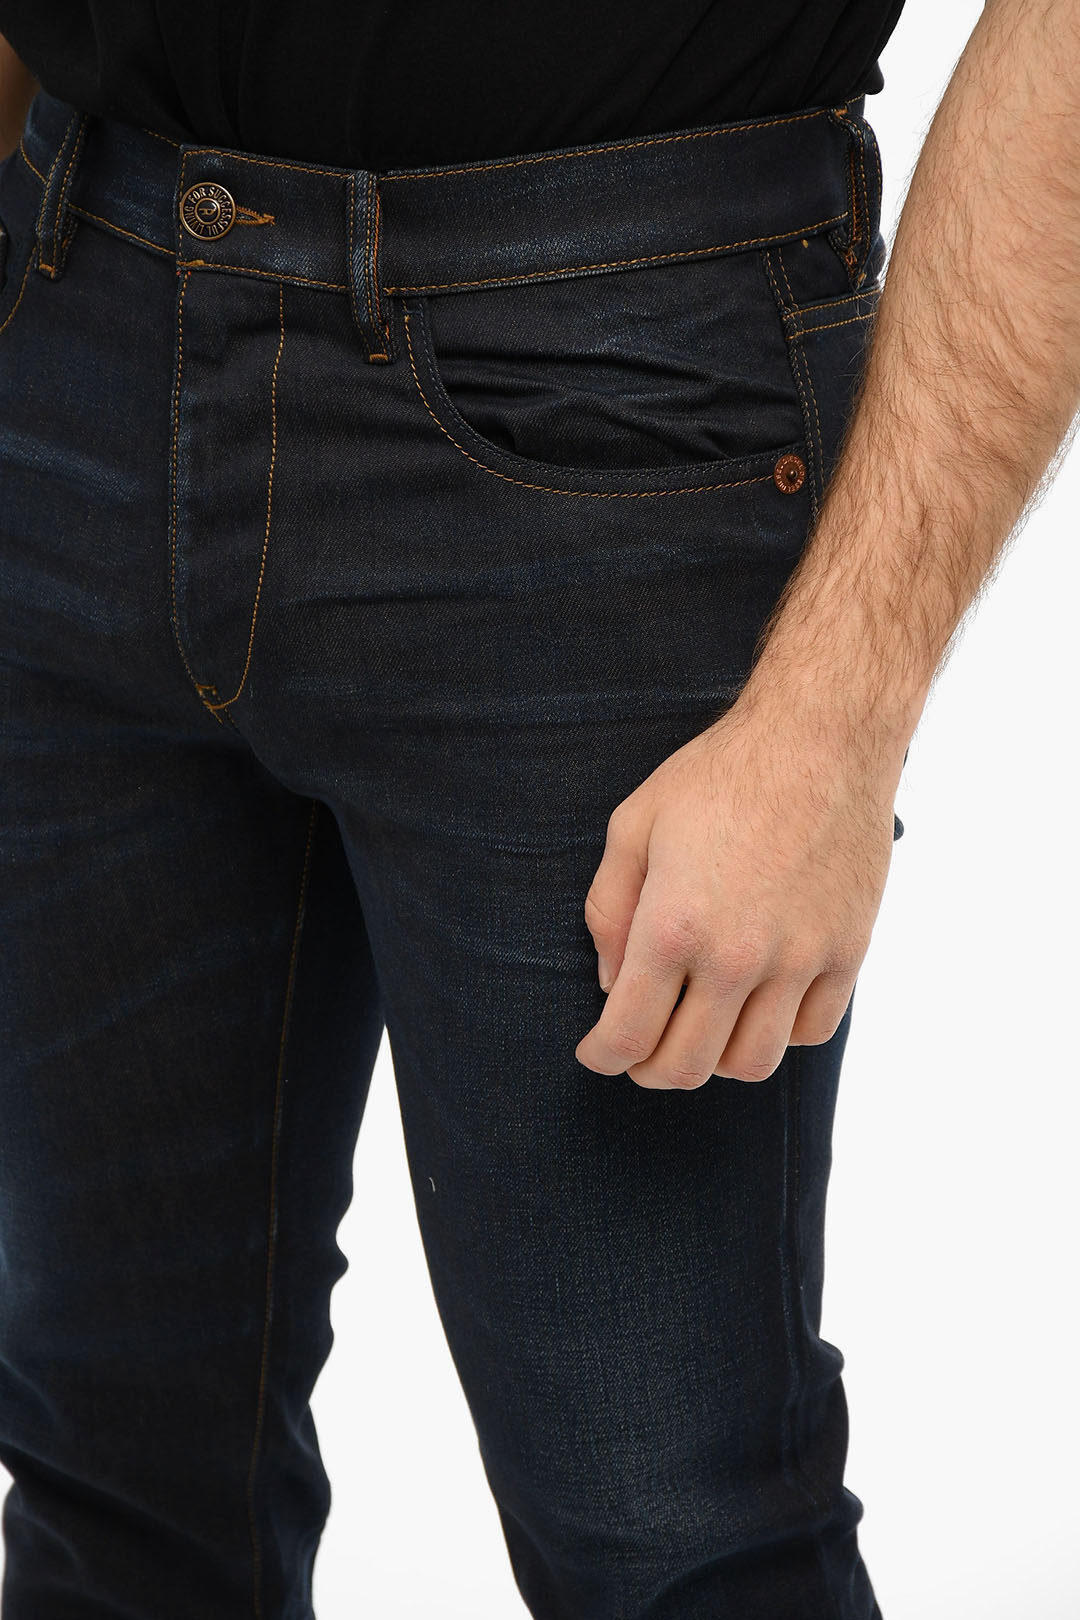 Diesel Dark-washed D-STRUKT Slim-fitting Jeans men - Glamood Outlet